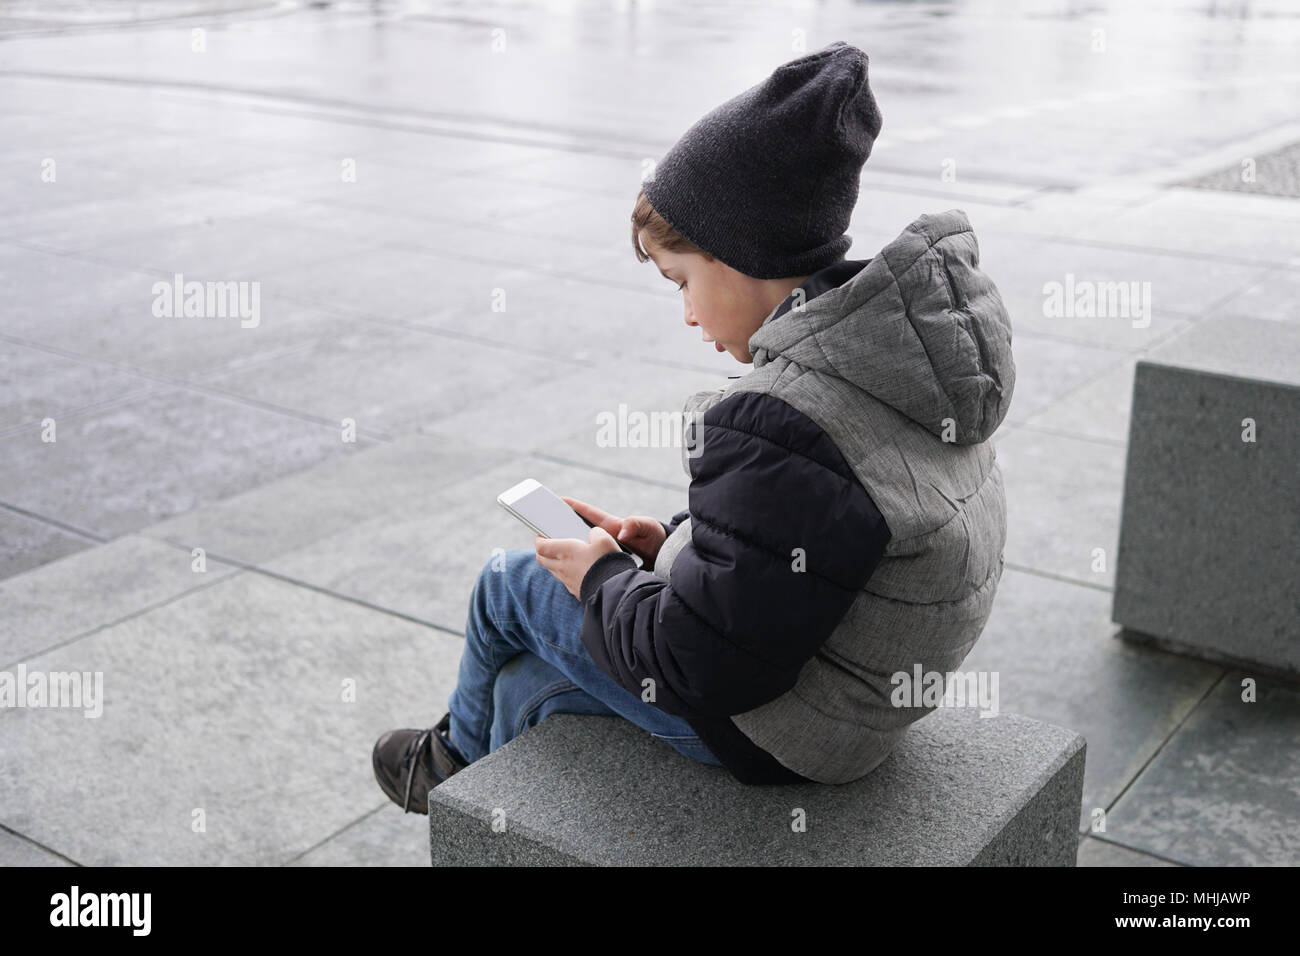 Foto de franco joven con teléfono móvil smartphone sentado fuera sola en las calles de la ciudad en invierno Foto de stock